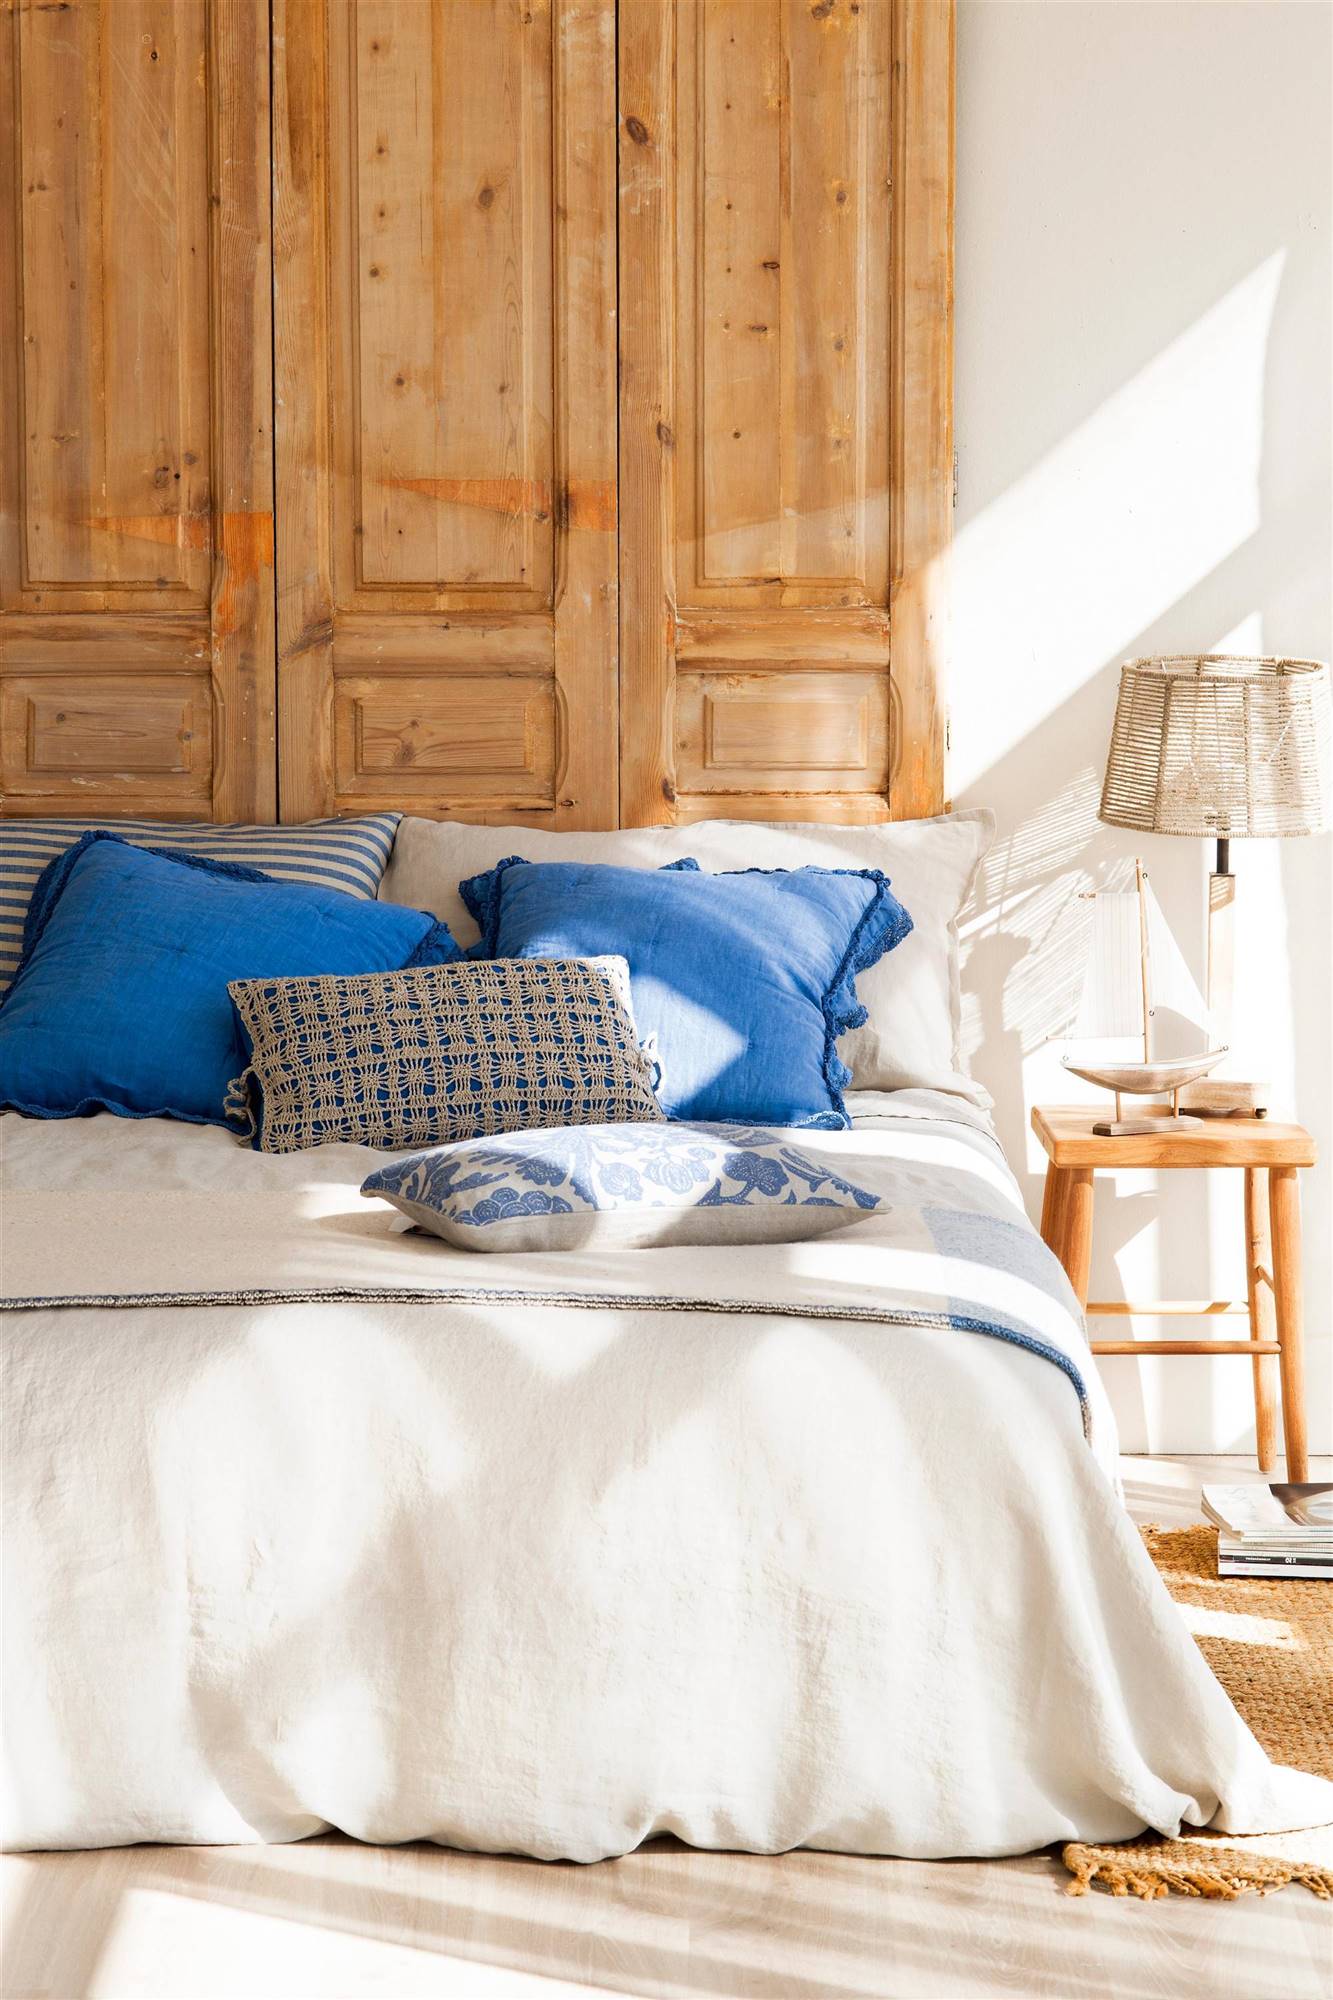 Dormitorio con cojines azules y cabecero realizado con puertas recicladas.